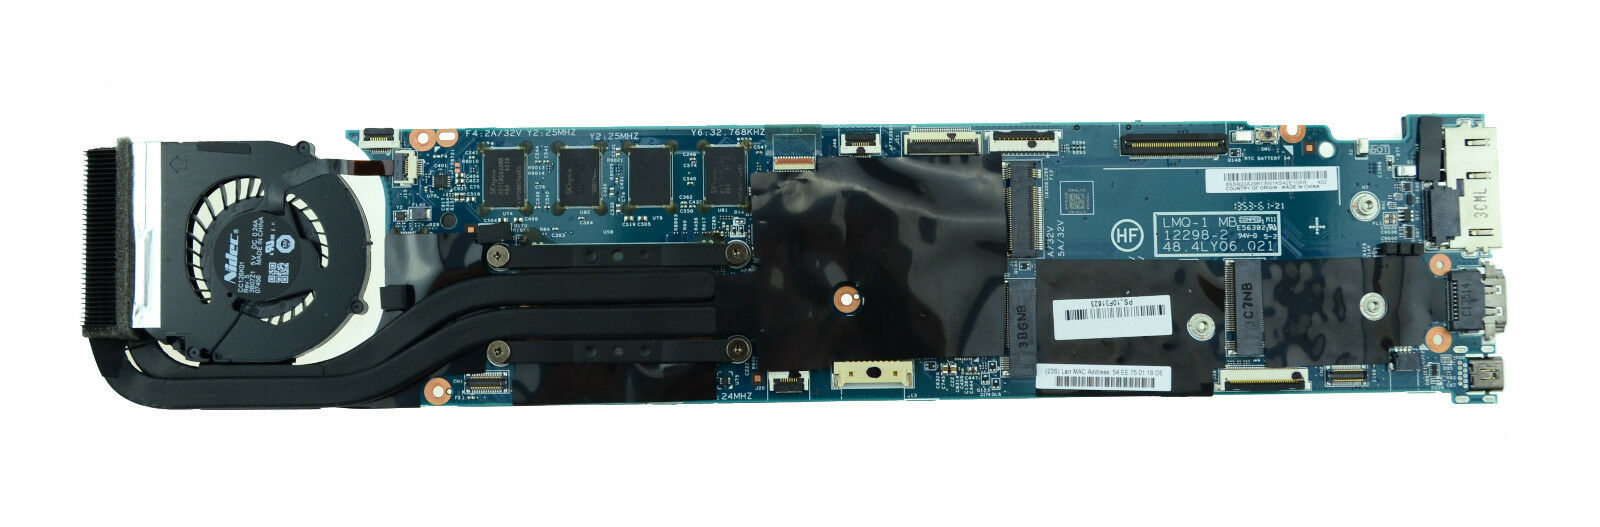 Lenovo ThinkPad X1 Carbon 2 Gen Mainboard LMQ-1 MB Intel i7-4550U 8GB 00HN771 (REFURBISHED)